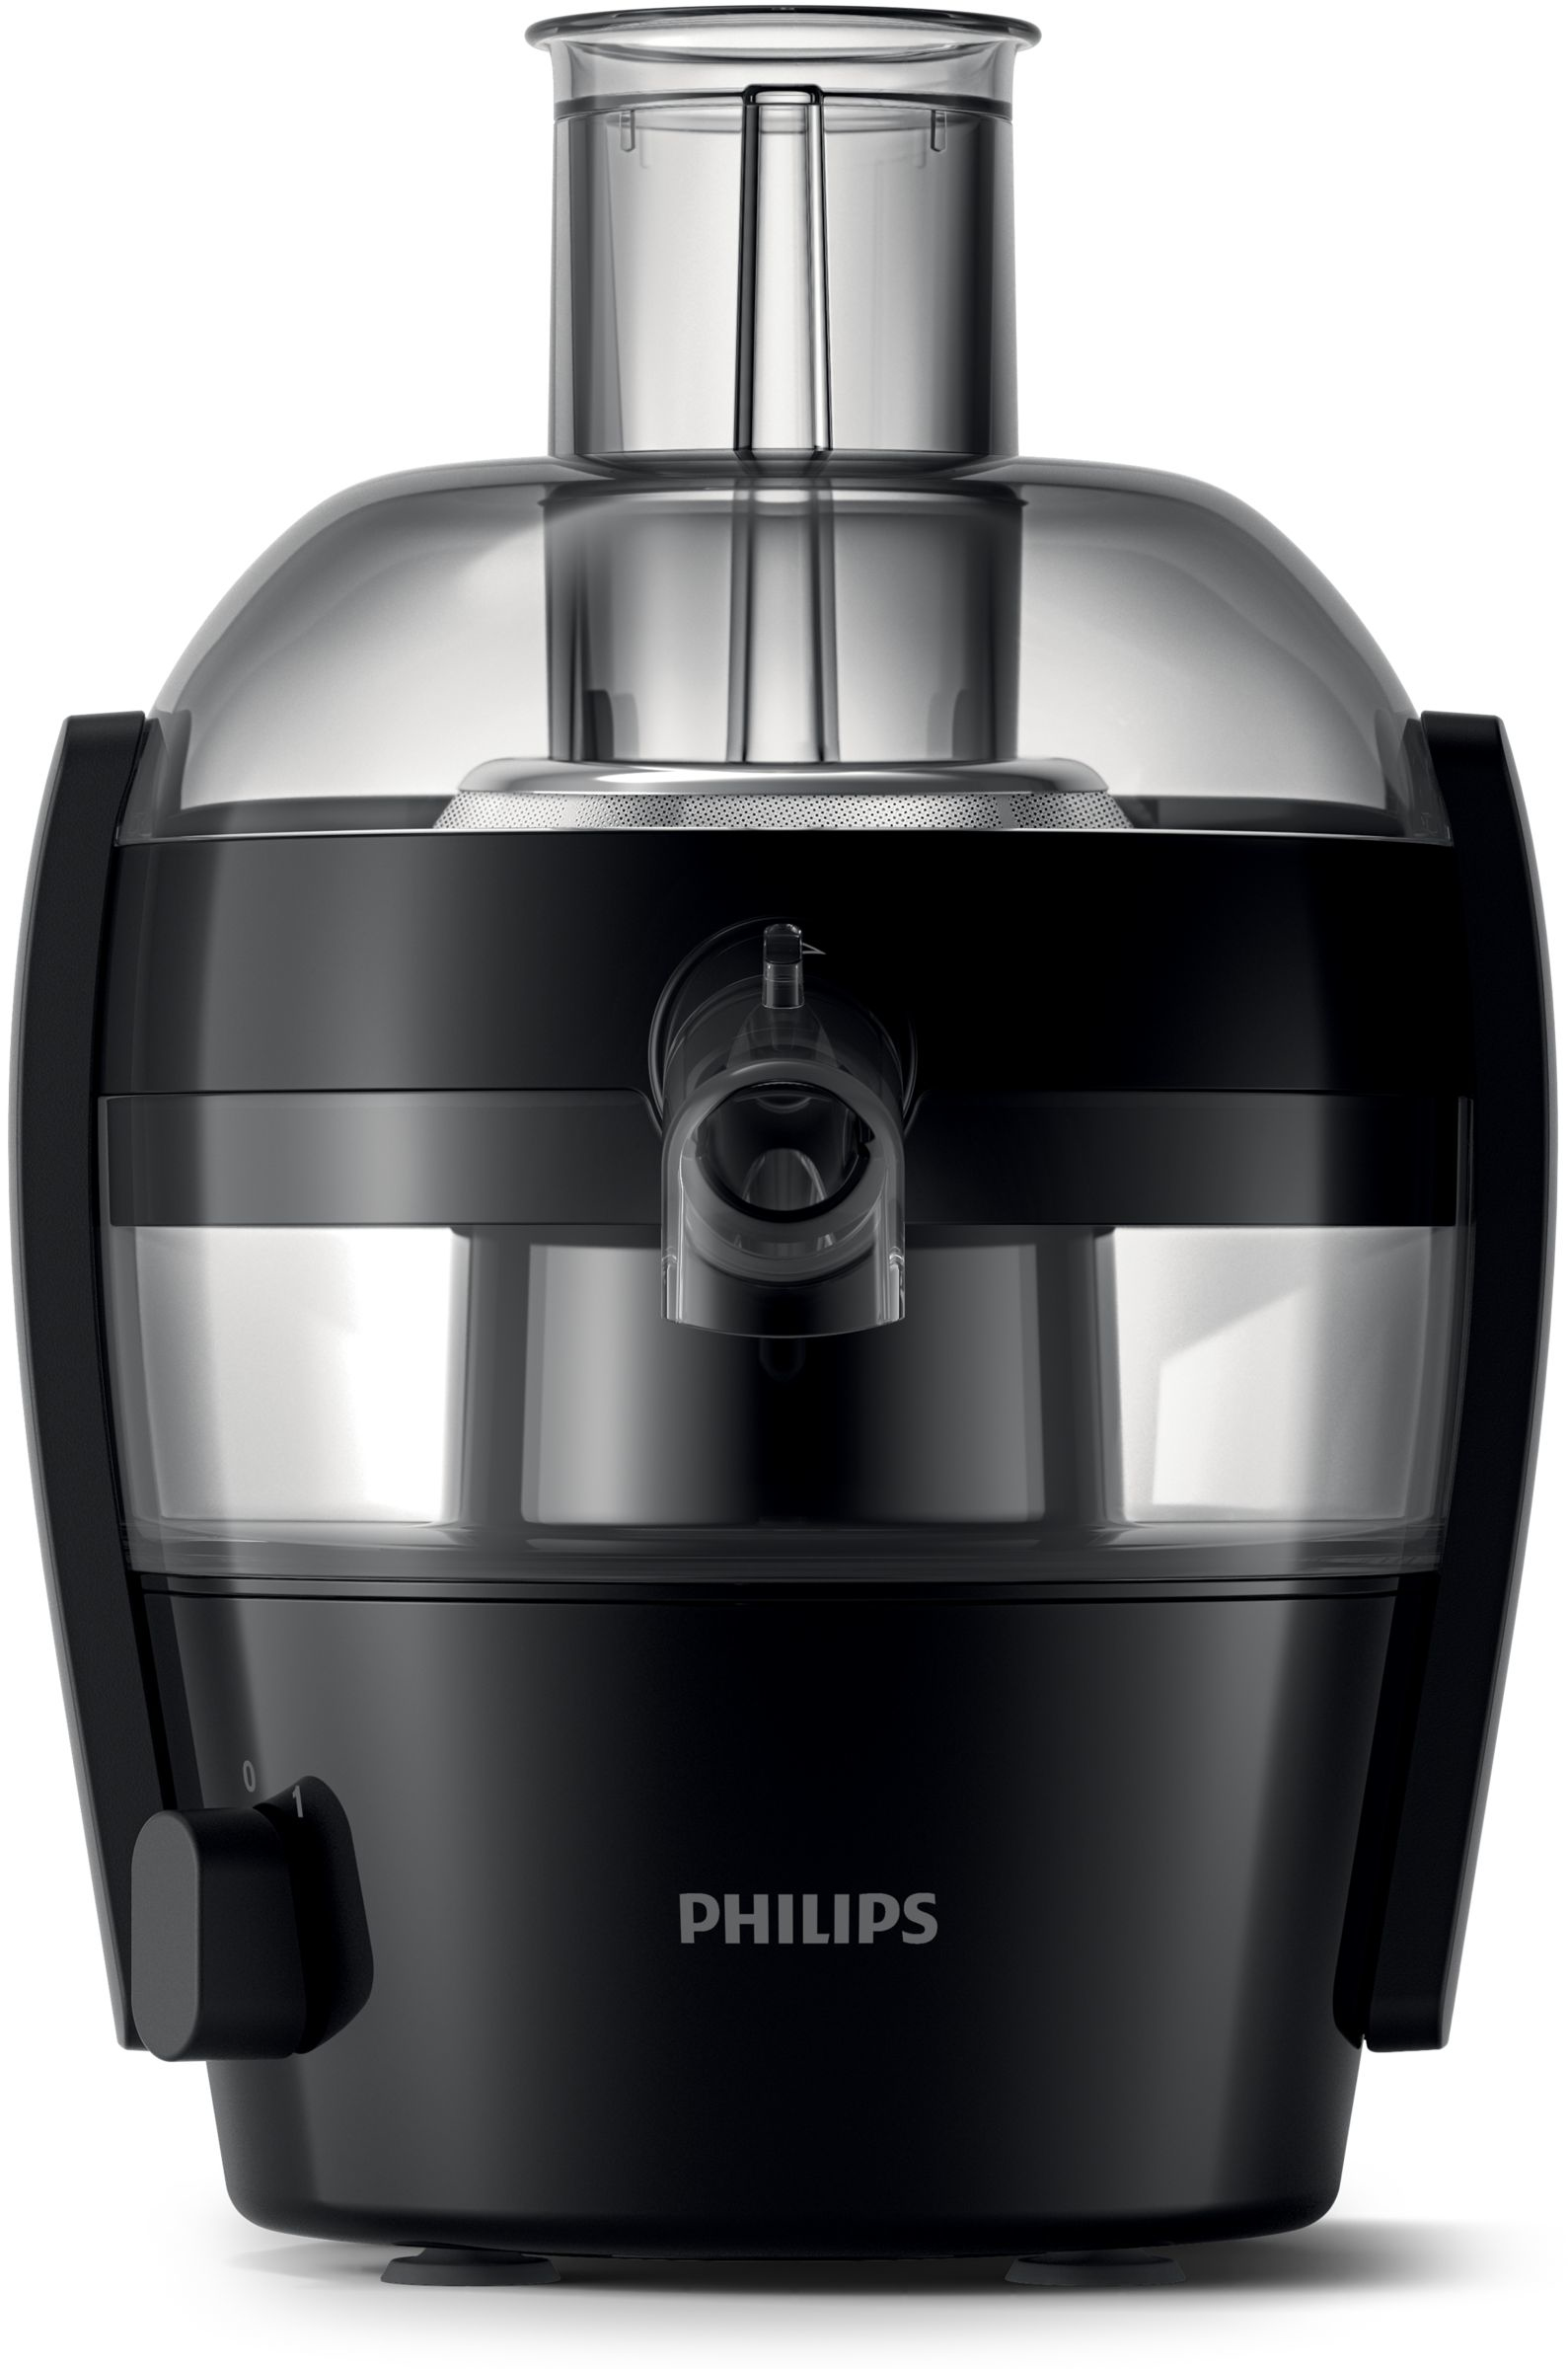 Philips Viva Collection HR1832/03 Centrifuga Compatta [HR1832/03]